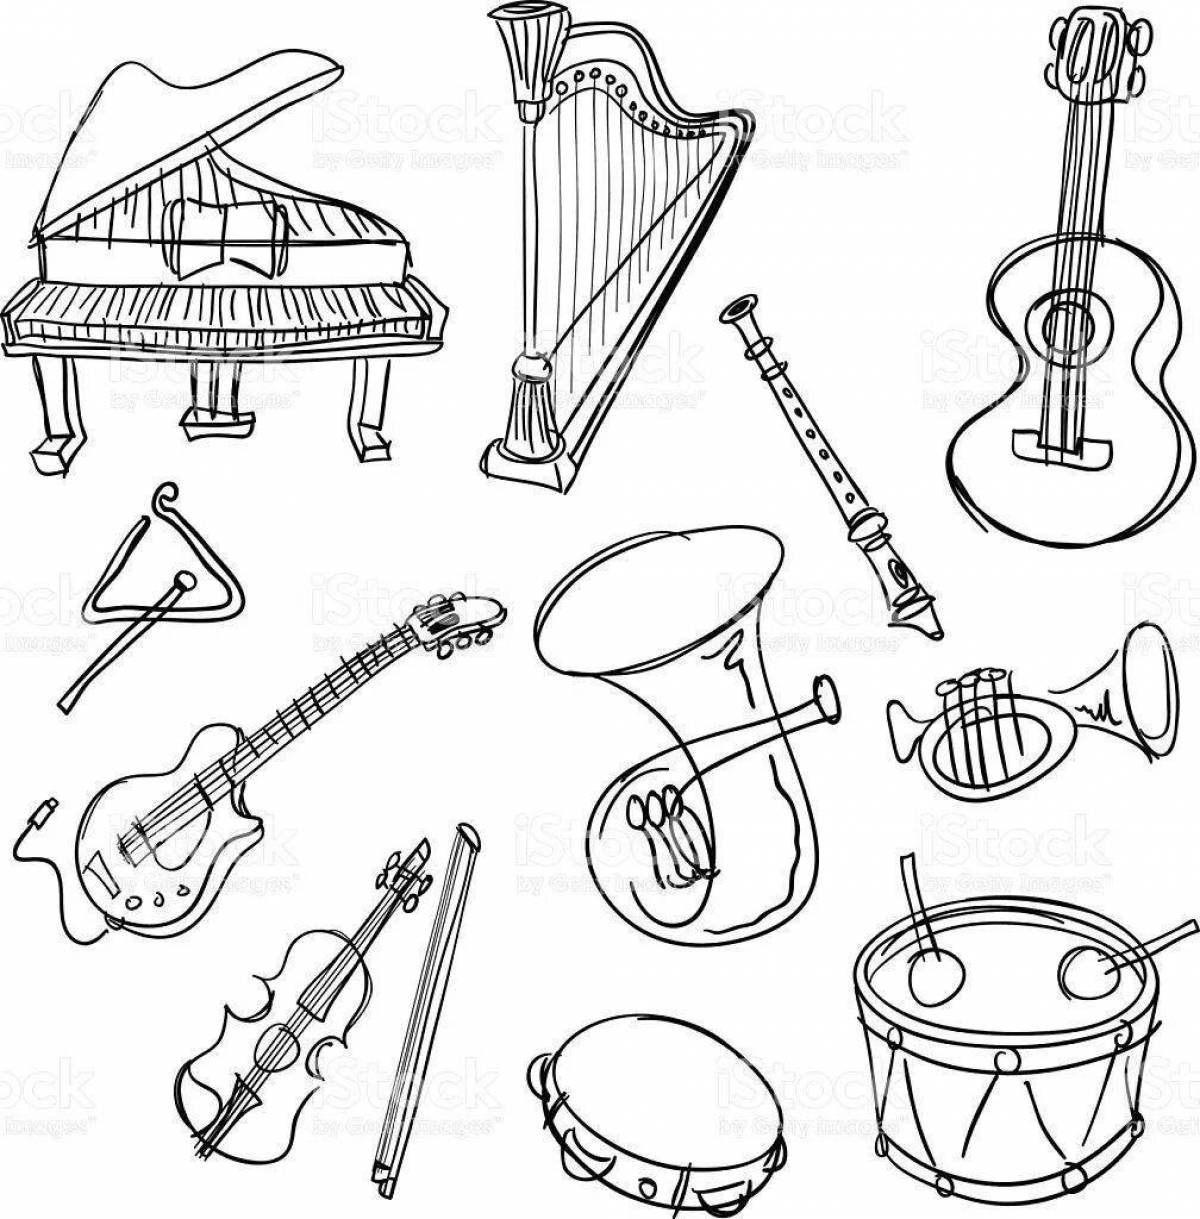 Увлекательные русские народные музыкальные инструменты